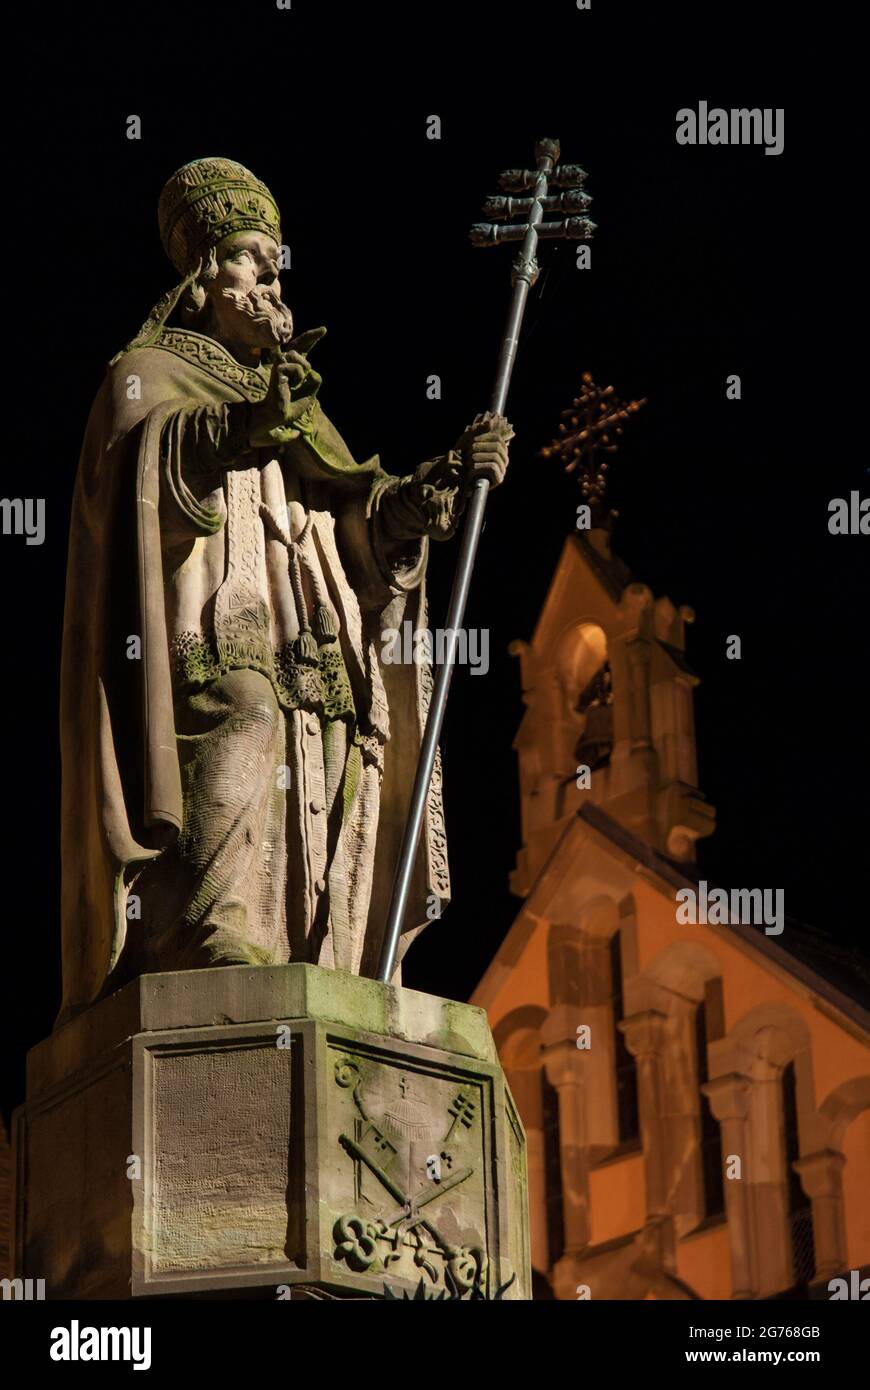 Eguisheim di notte: Statua di Papa Leone IX. (1002-1054) nella sua città natale, il villaggio viticoltori di Eguisheim nella regione Alsazia. Foto Stock